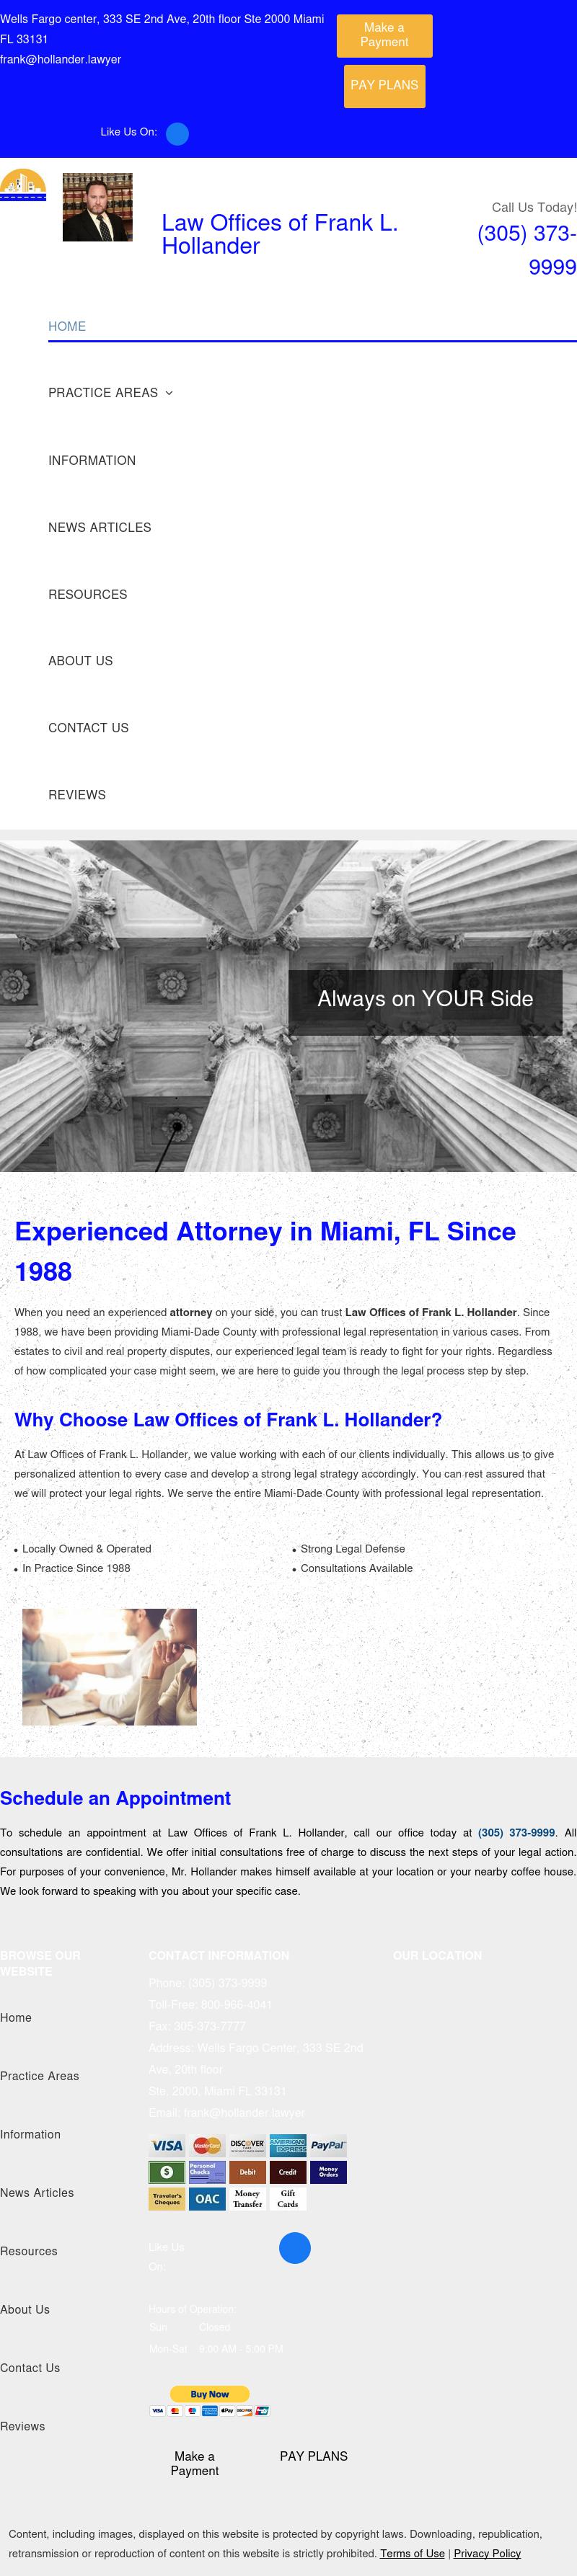 Hollander And Associates LLC - Miami FL Lawyers